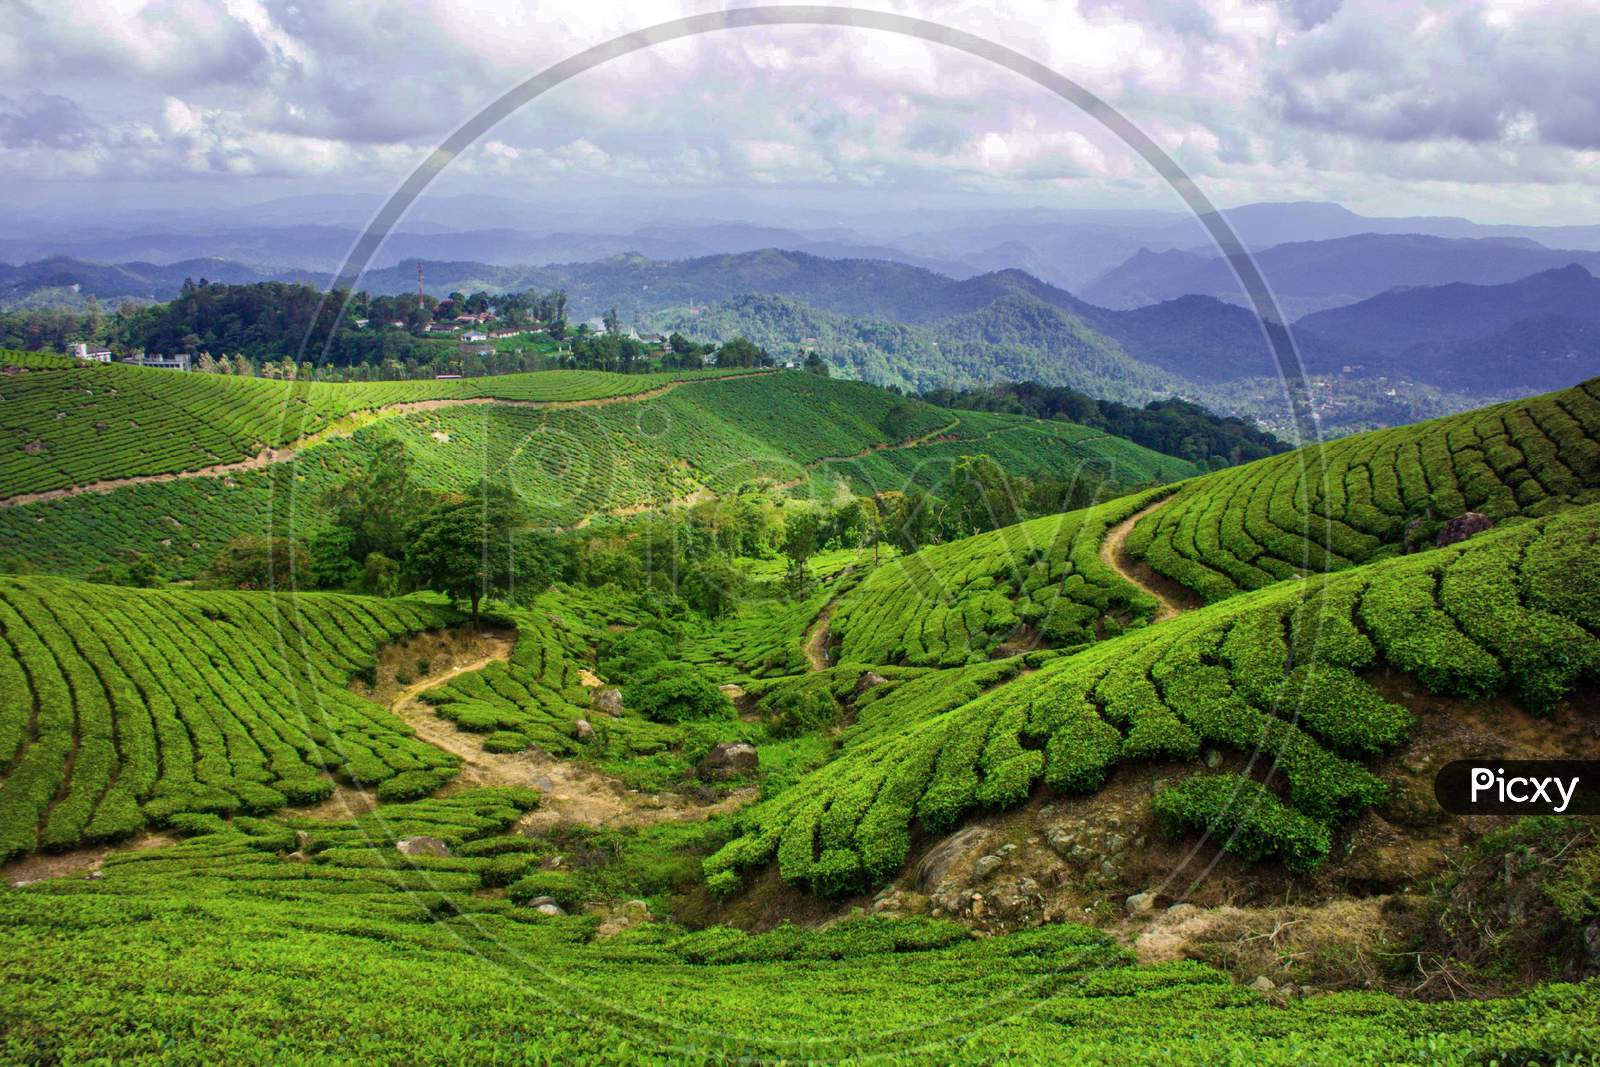 September 2019, Munnar, Kerala - A beautiful tea valley